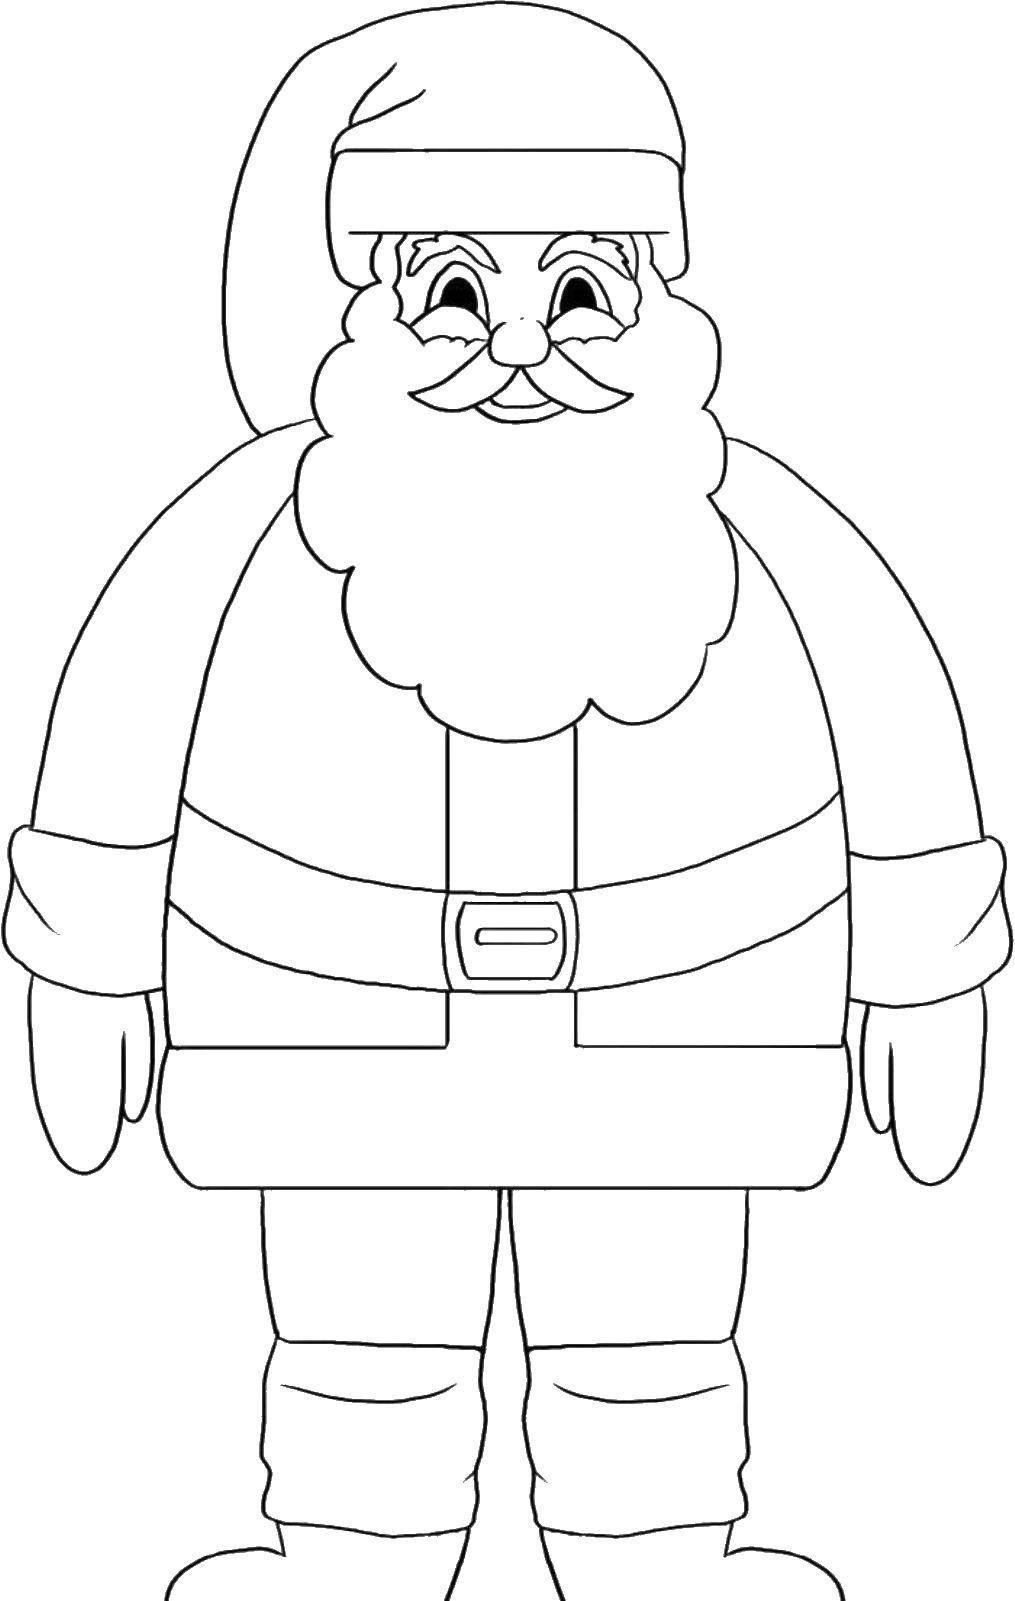 Название: Раскраска Контур деда мороза. Категория: рождество. Теги: дед мороз, борода, контур.